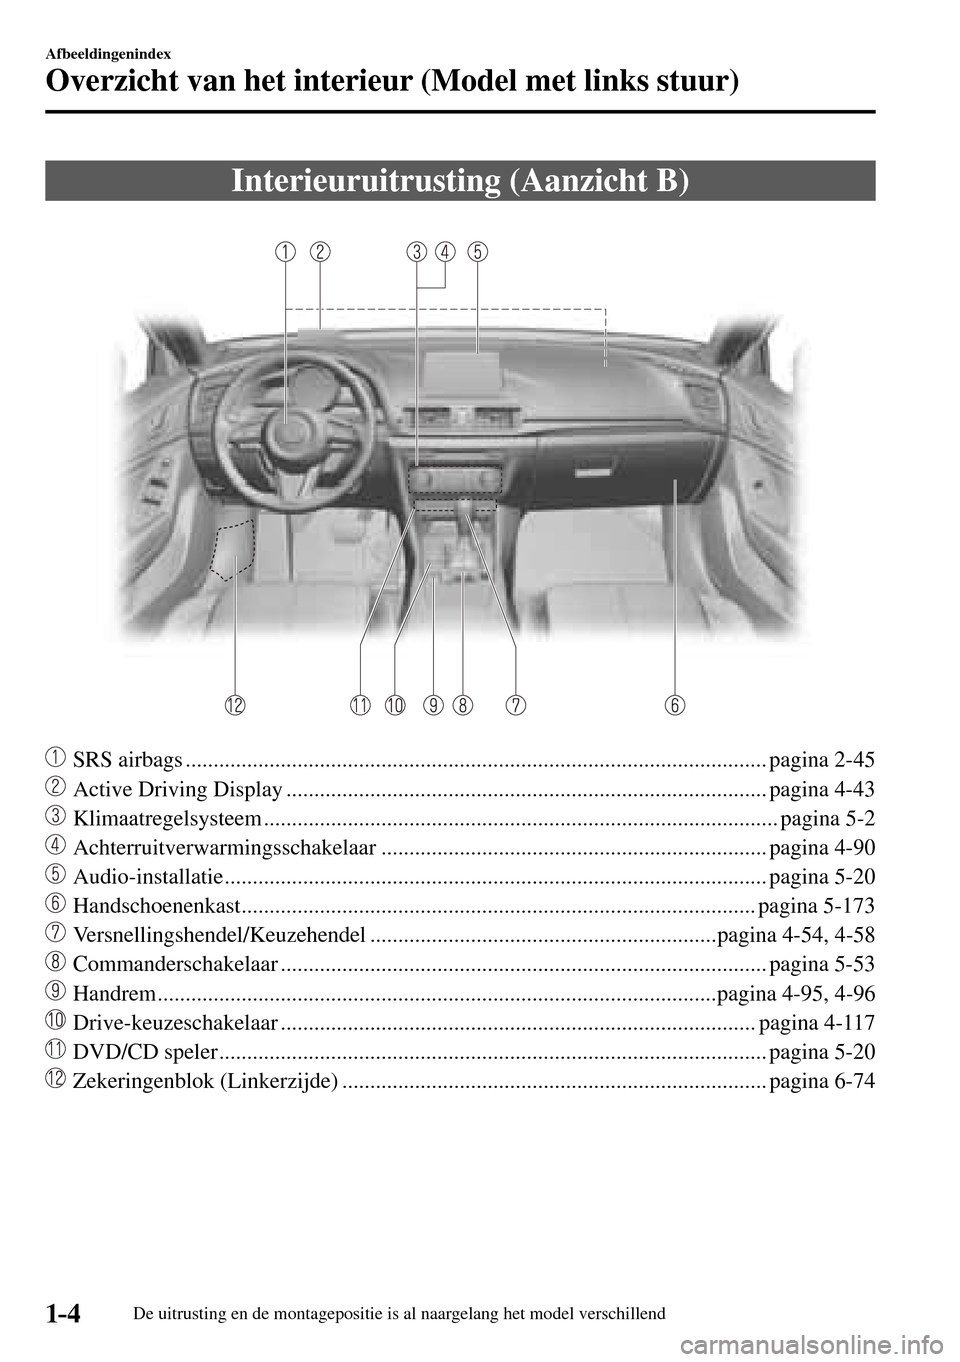 MAZDA MODEL 3 HATCHBACK 2016  Handleiding (in Dutch) 1–4
Afbeeldingenindex
Overzicht van het interieur (Model met links stuur)
De uitrusting en de montagepositie is al naargelang het model verschillend
 Interieuruitrusting (Aanzicht B)
     SRS airbag